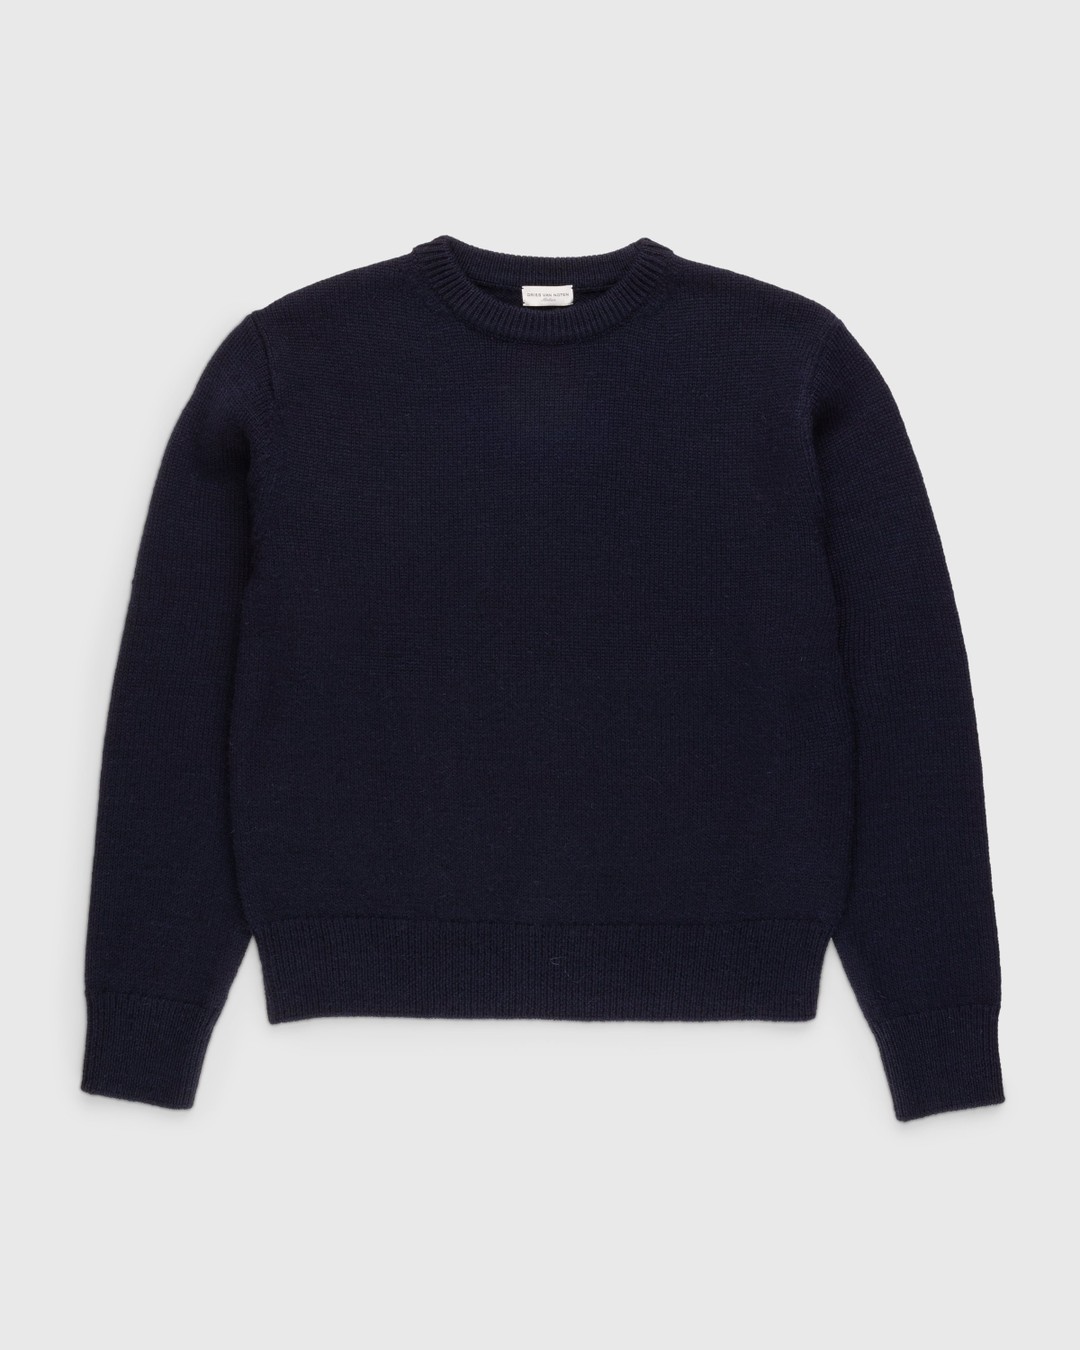 Dries van Noten – Nelson Sweater Blue - Knitwear - Blue - Image 1